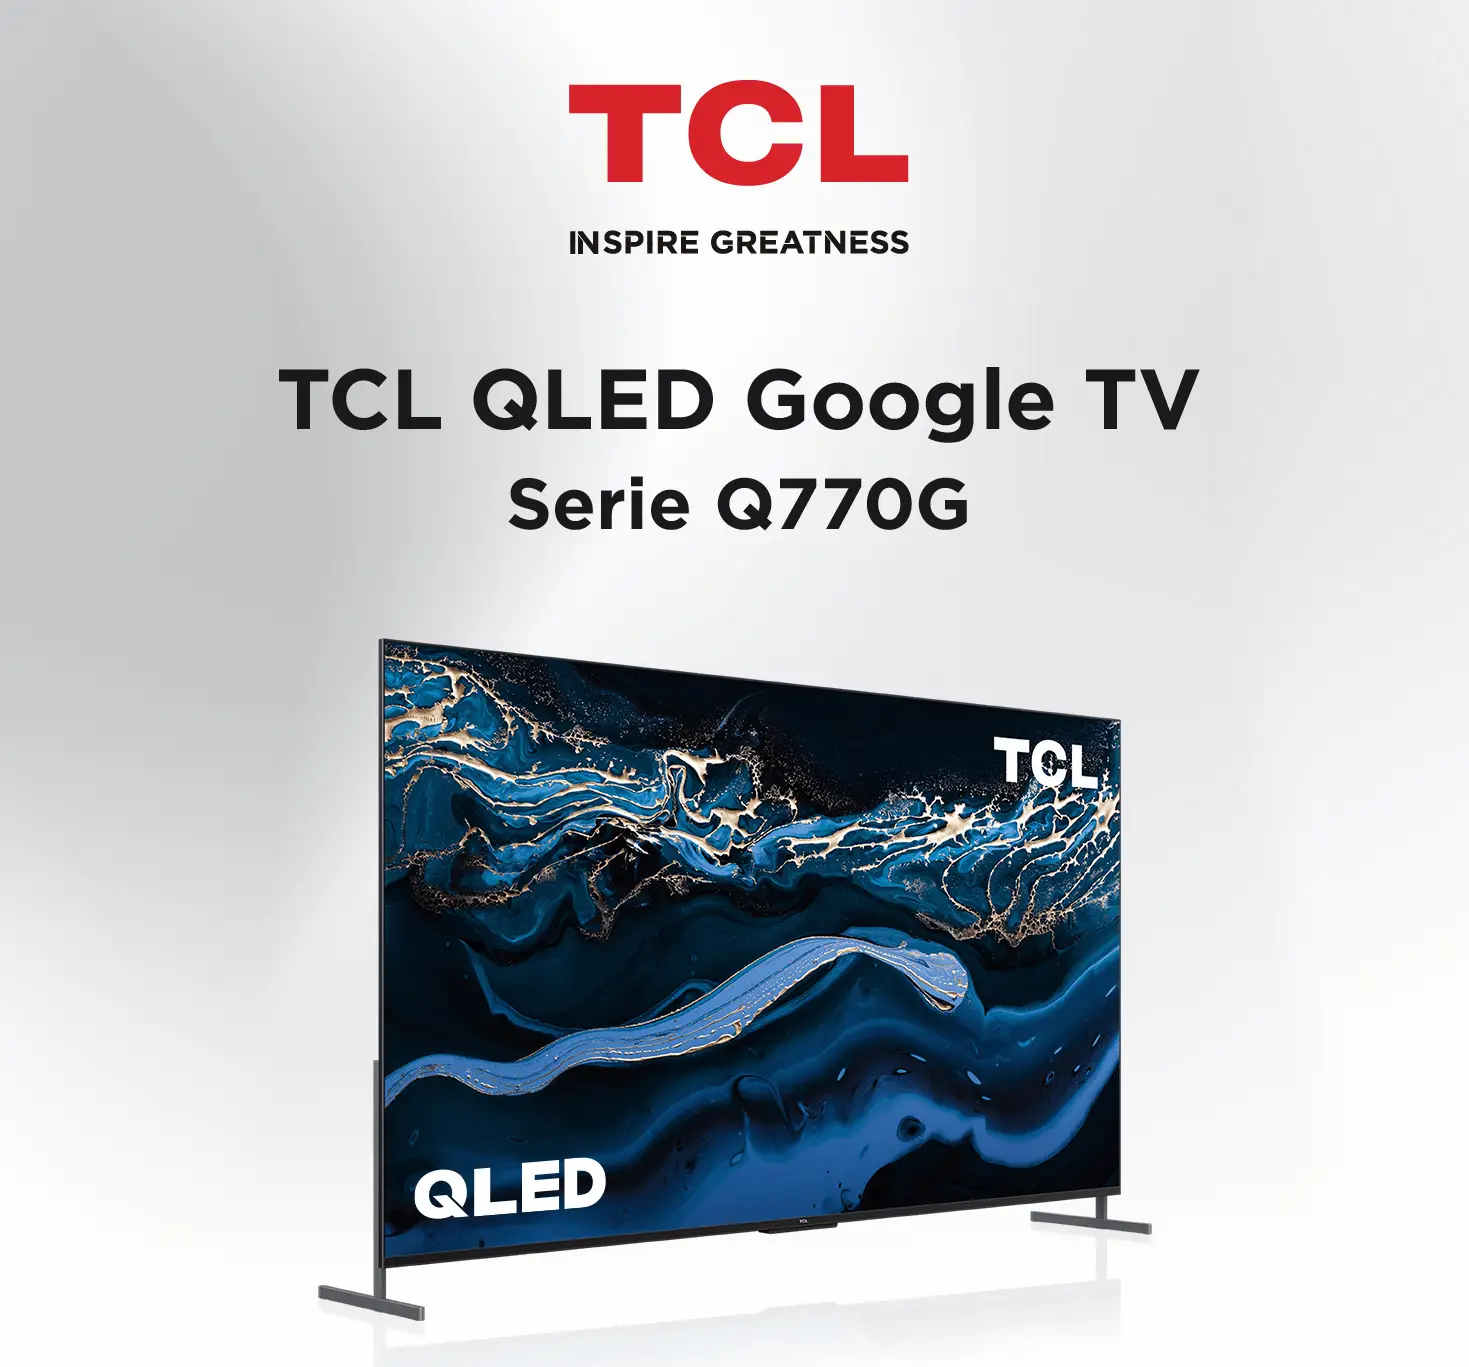 Pantalla TCL 98 Pulgadas UHD Google TV 98S550G a precio de socio